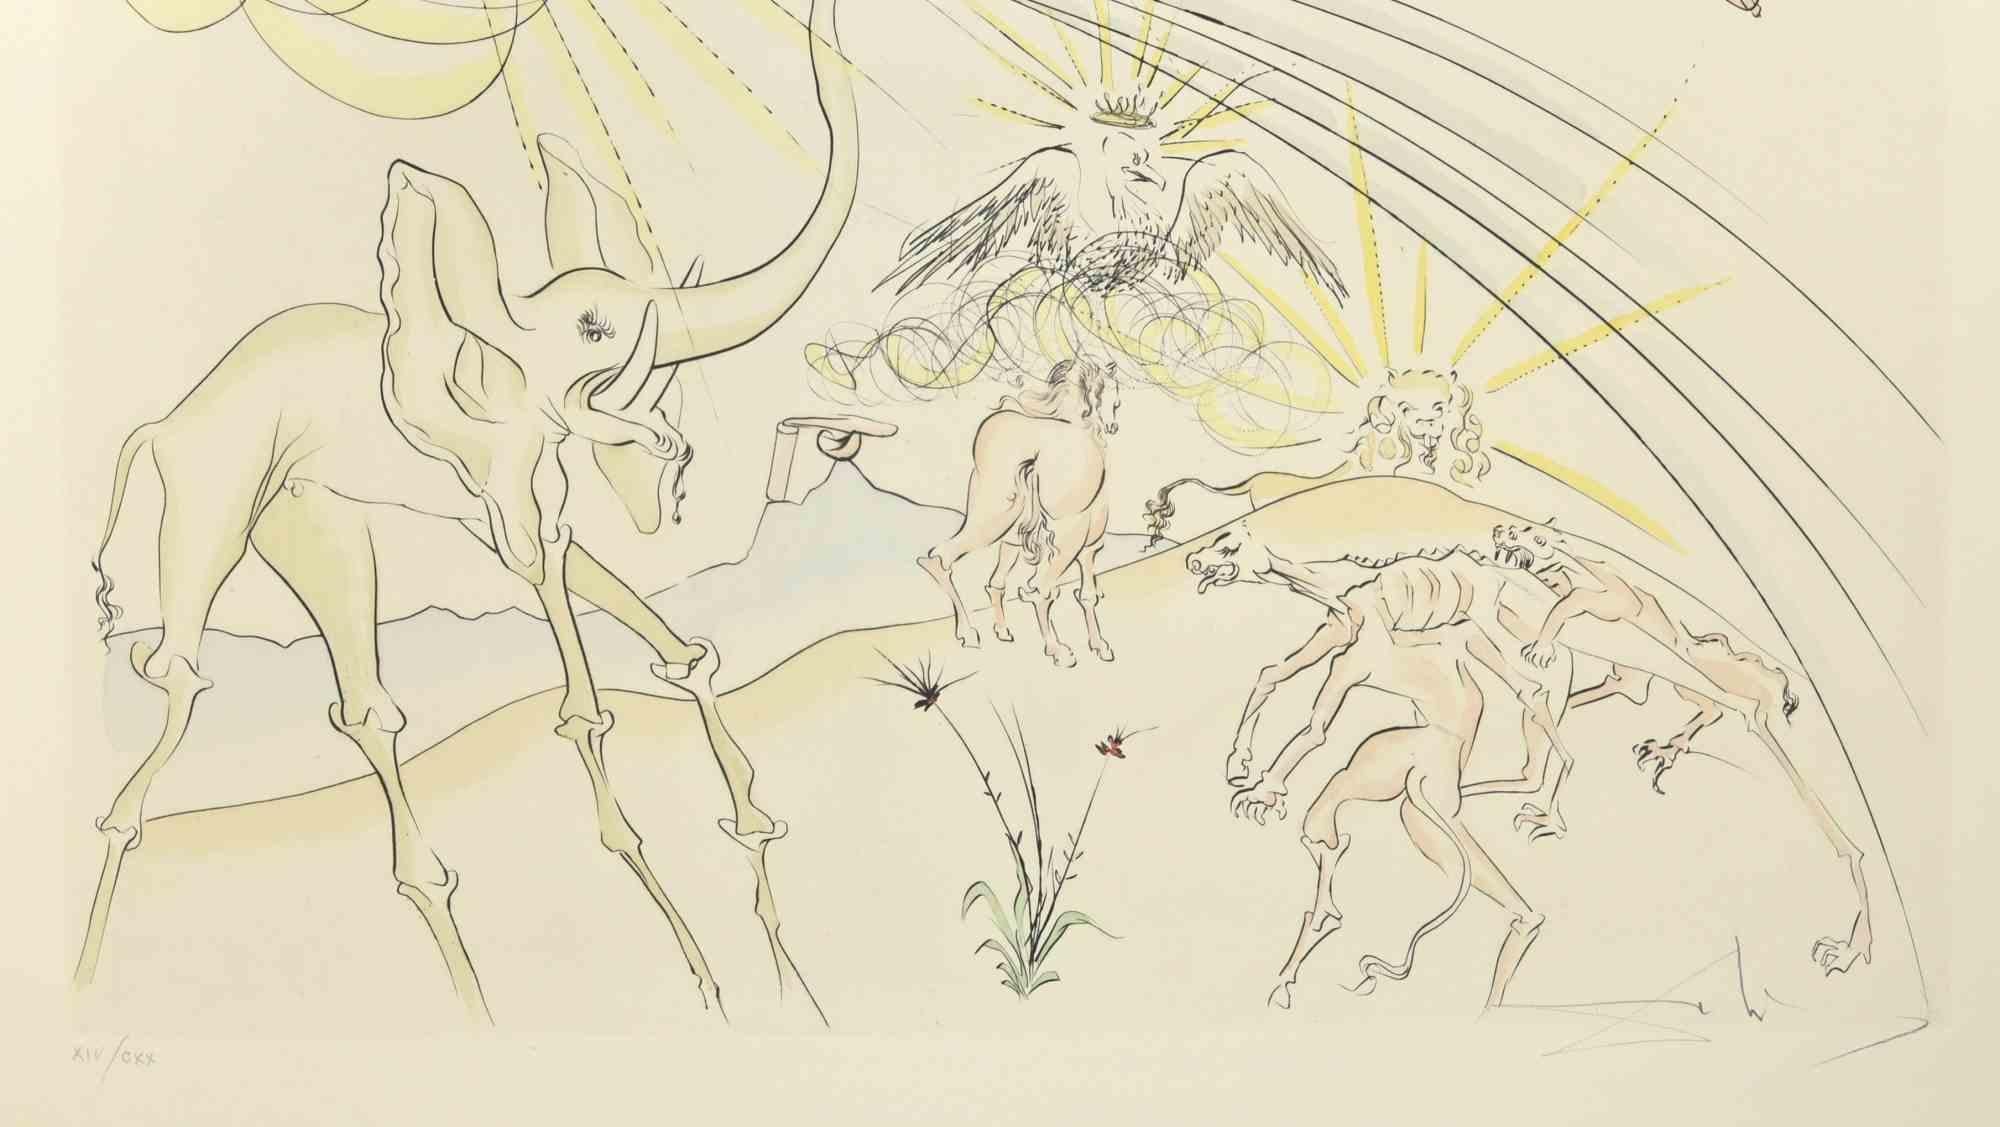 Pestkranke Tiere - Radierung  - 1974 – Print von Salvador Dalí